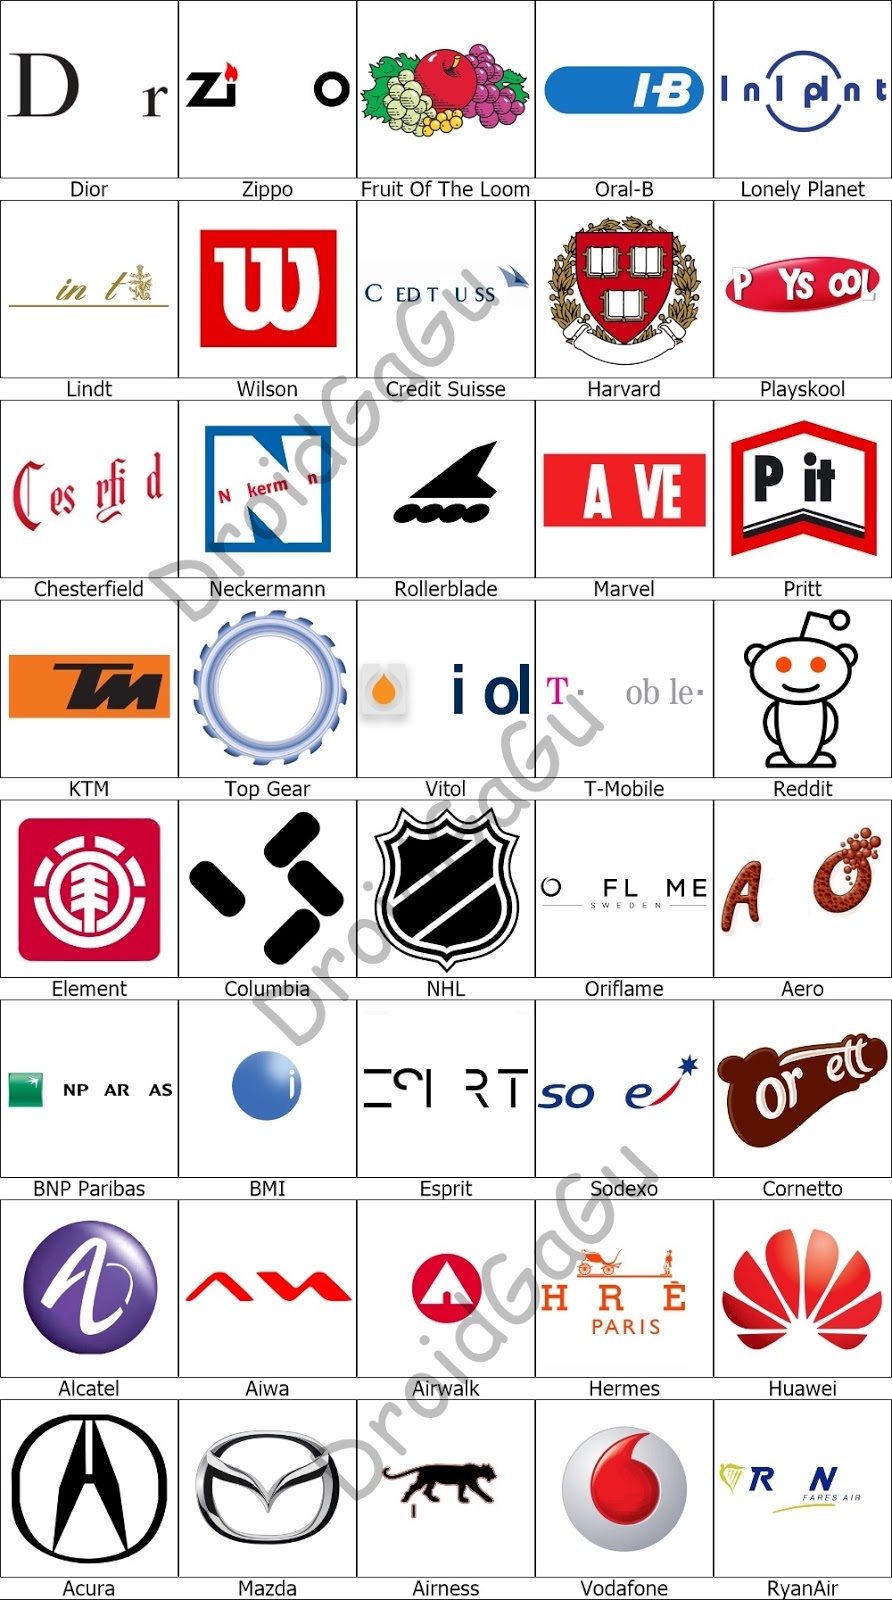 picture quiz logos level 5